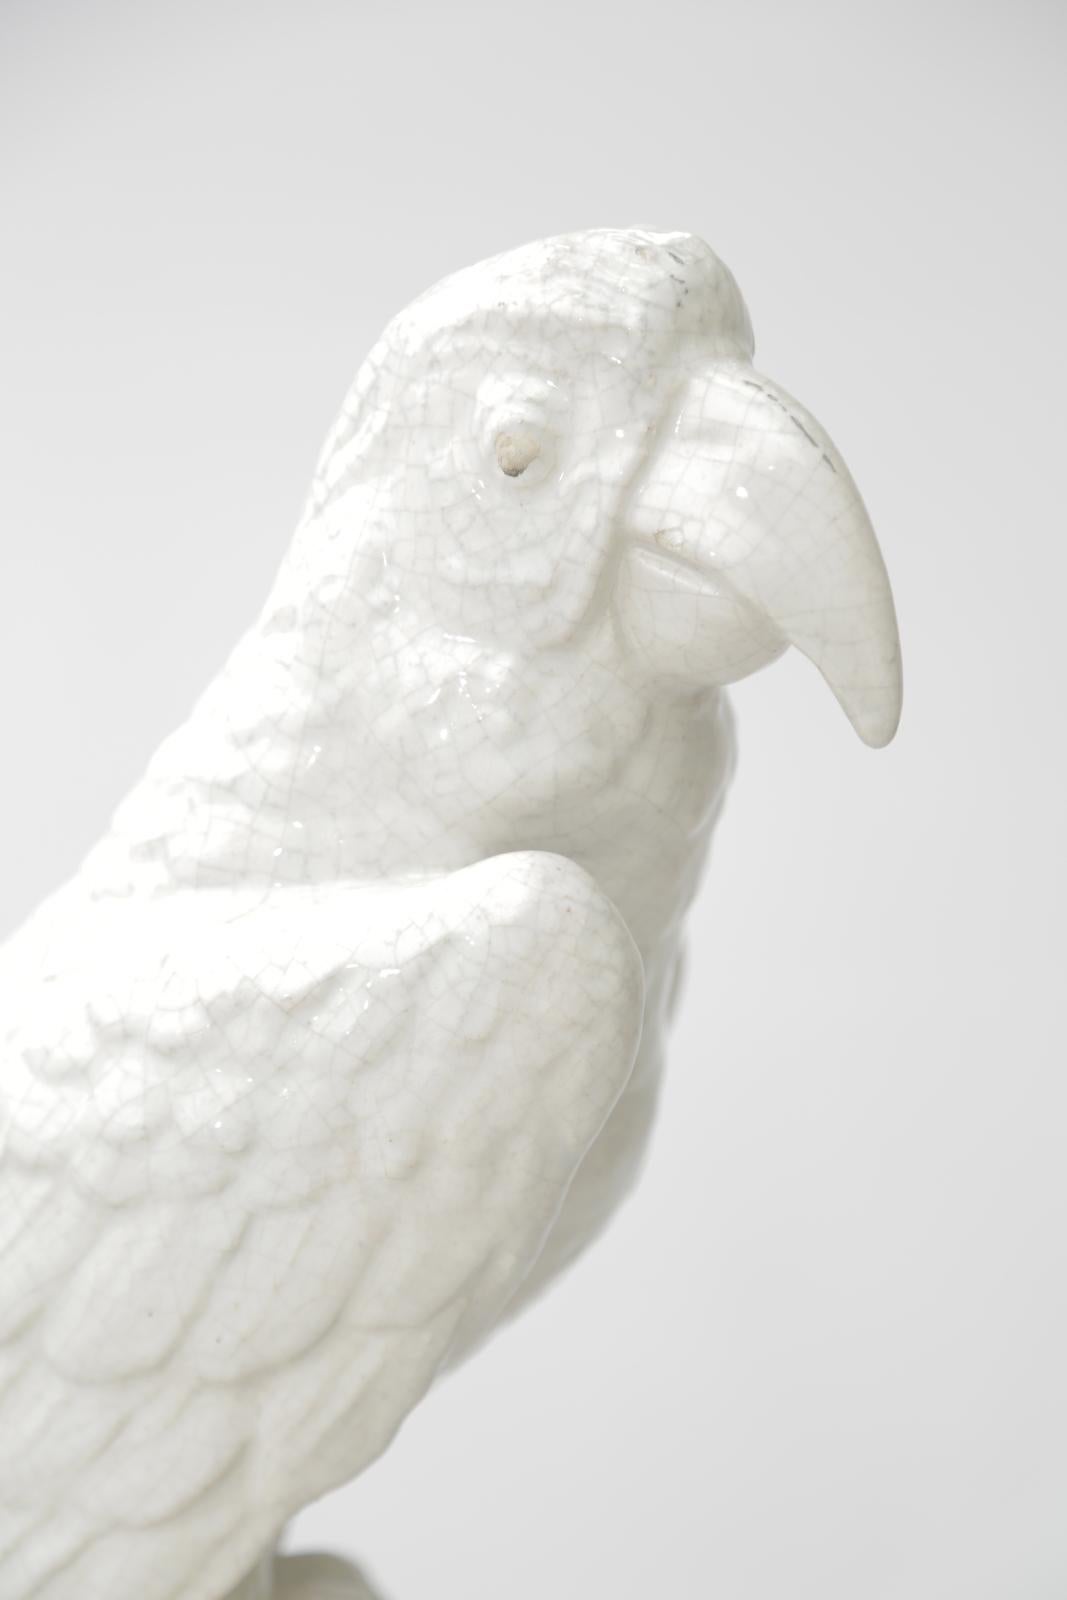 Sculpture en poterie bien articulée représentant un perroquet perché sur une branche d'arbre. Le corps du perroquet est coulé en porcelaine émaillée, tandis que le fond reste en biscuit. 

Stock ID : D3231.